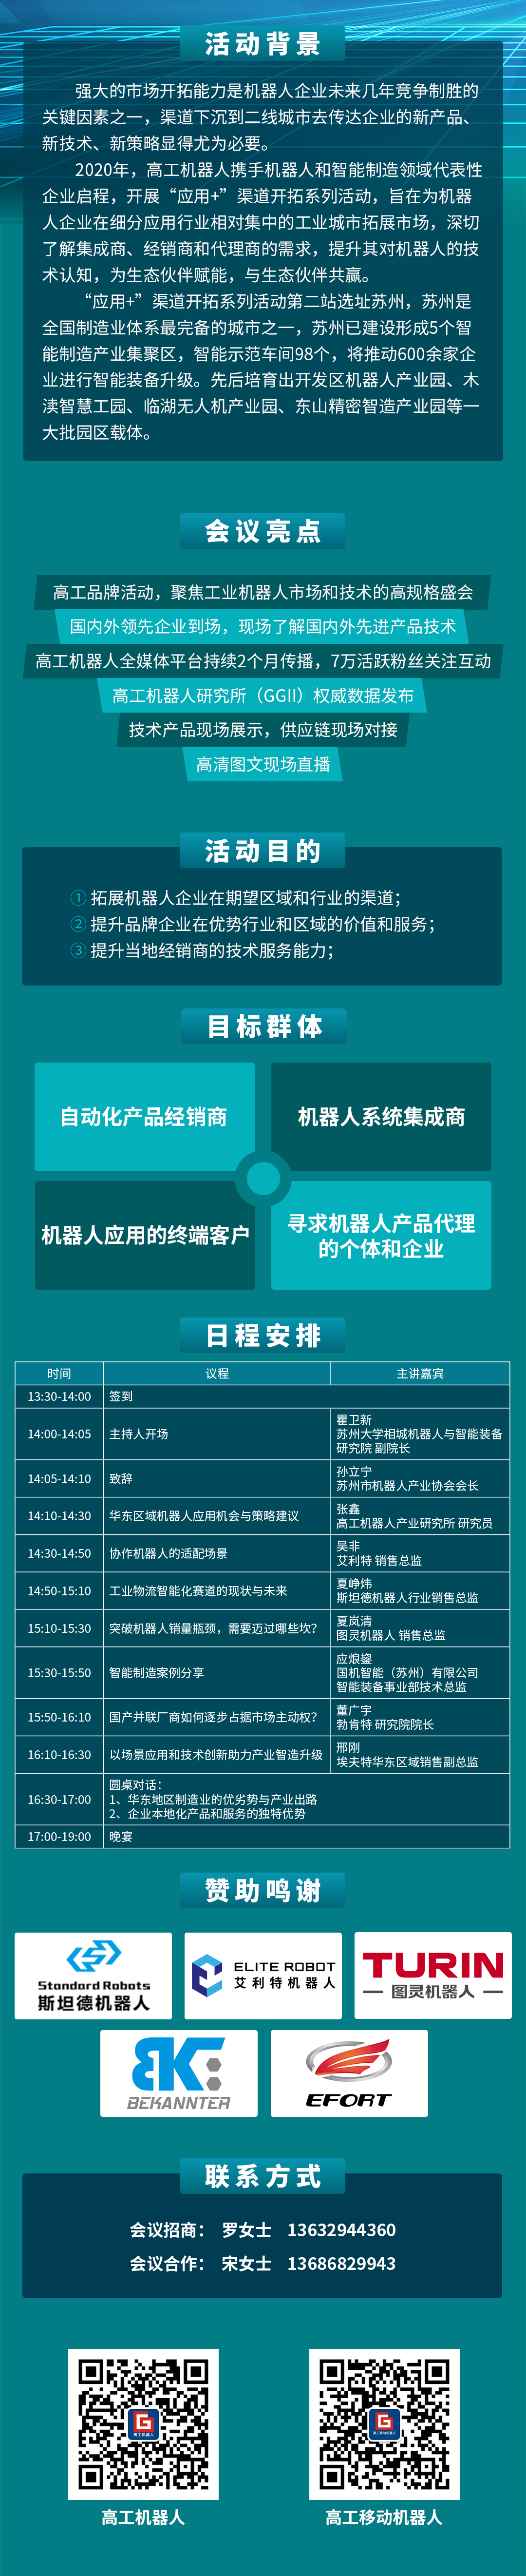 2020“应用+”生态伙伴大会(长图)苏州(3).png